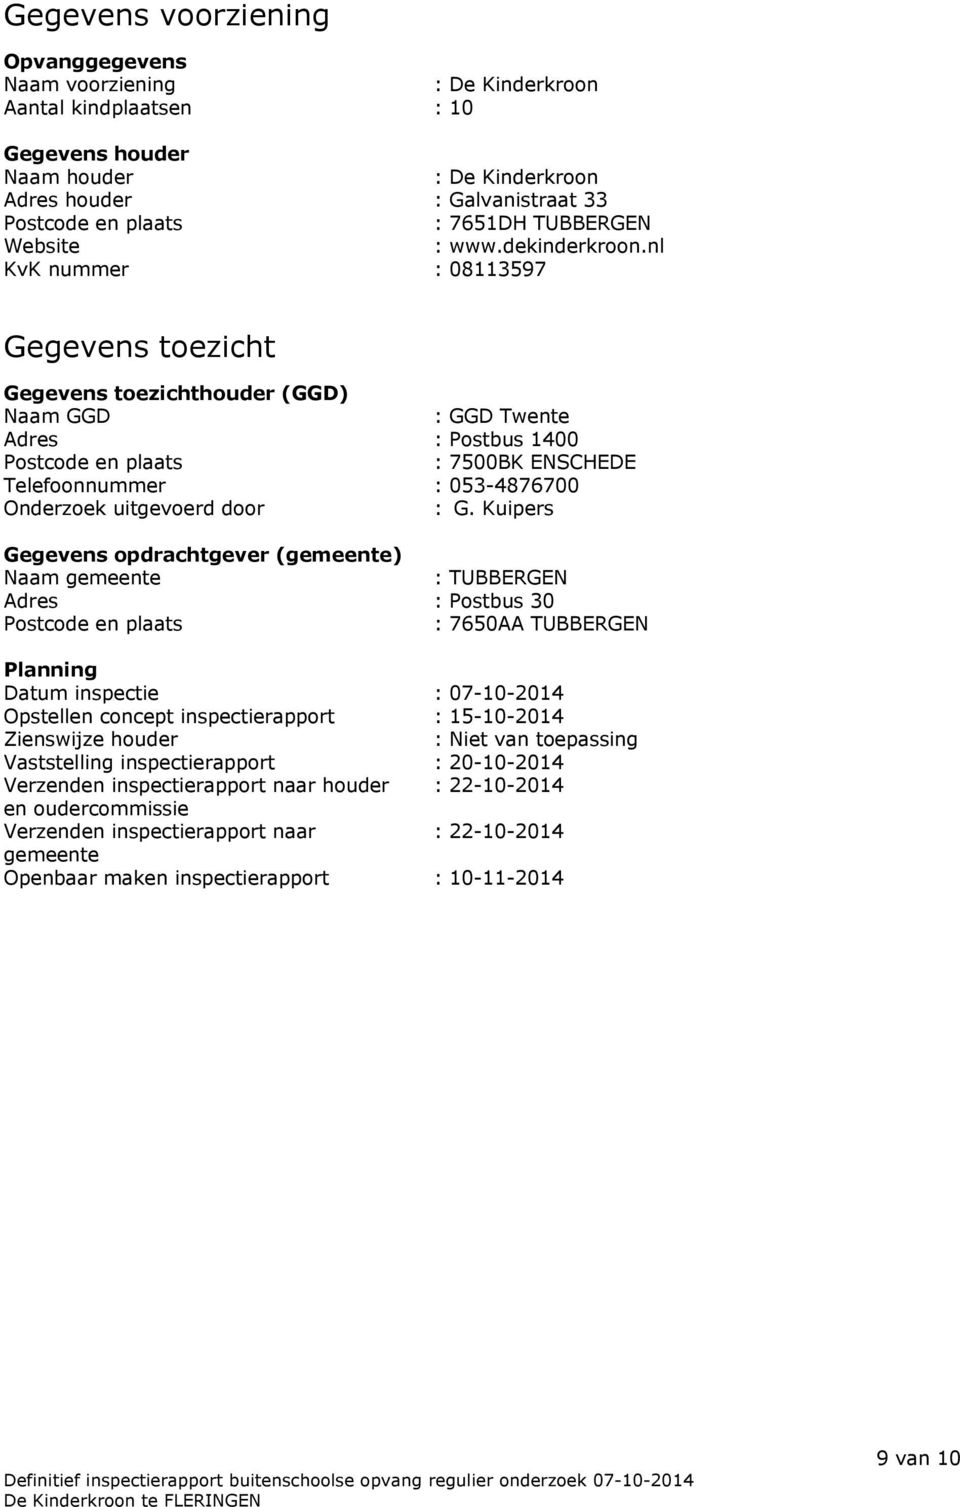 nl KvK nummer : 08113597 Gegevens toezicht Gegevens toezichthouder (GGD) Naam GGD : GGD Twente Adres : Postbus 1400 Postcode en plaats : 7500BK ENSCHEDE Telefoonnummer : 053-4876700 Onderzoek